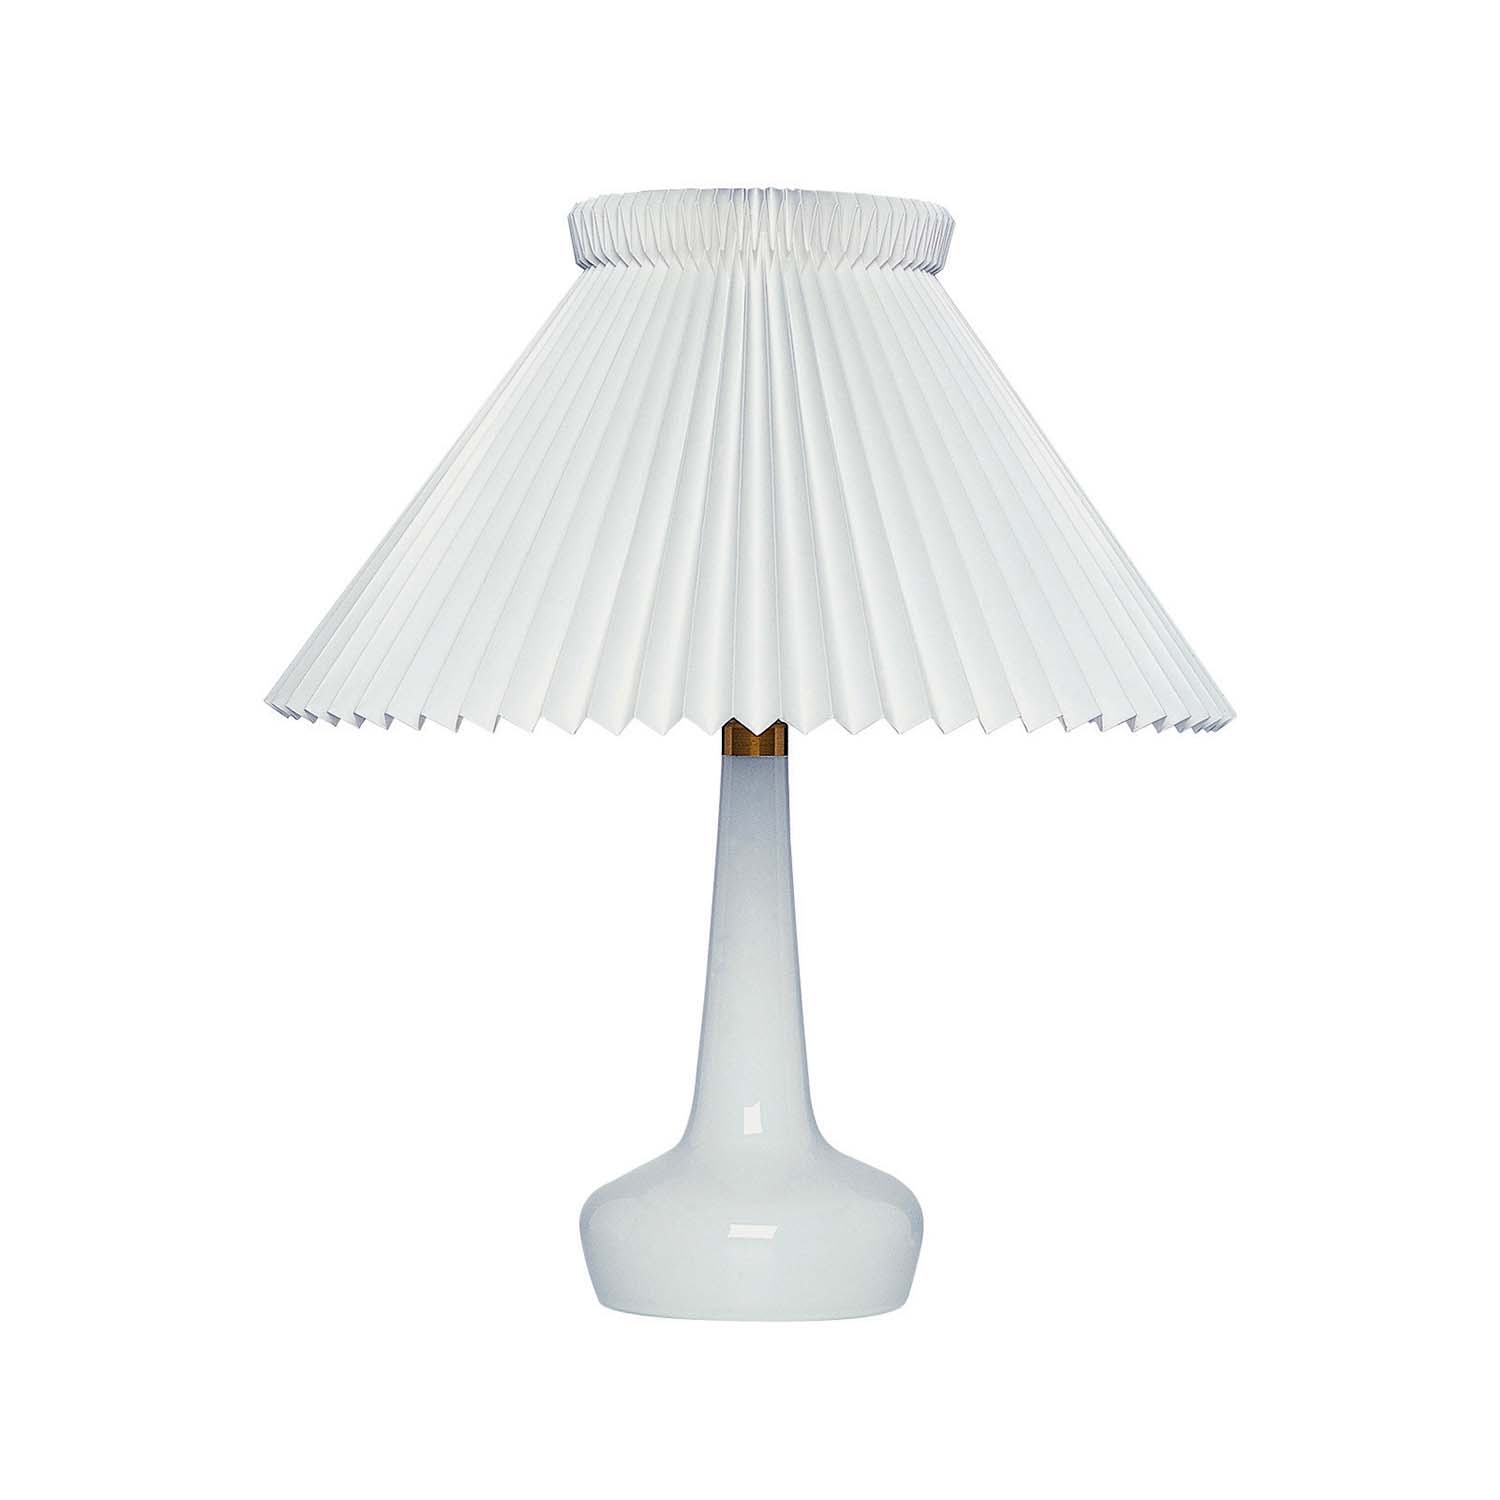 CLASSIC 311 - Lampe de table vintage fabrication artisanale